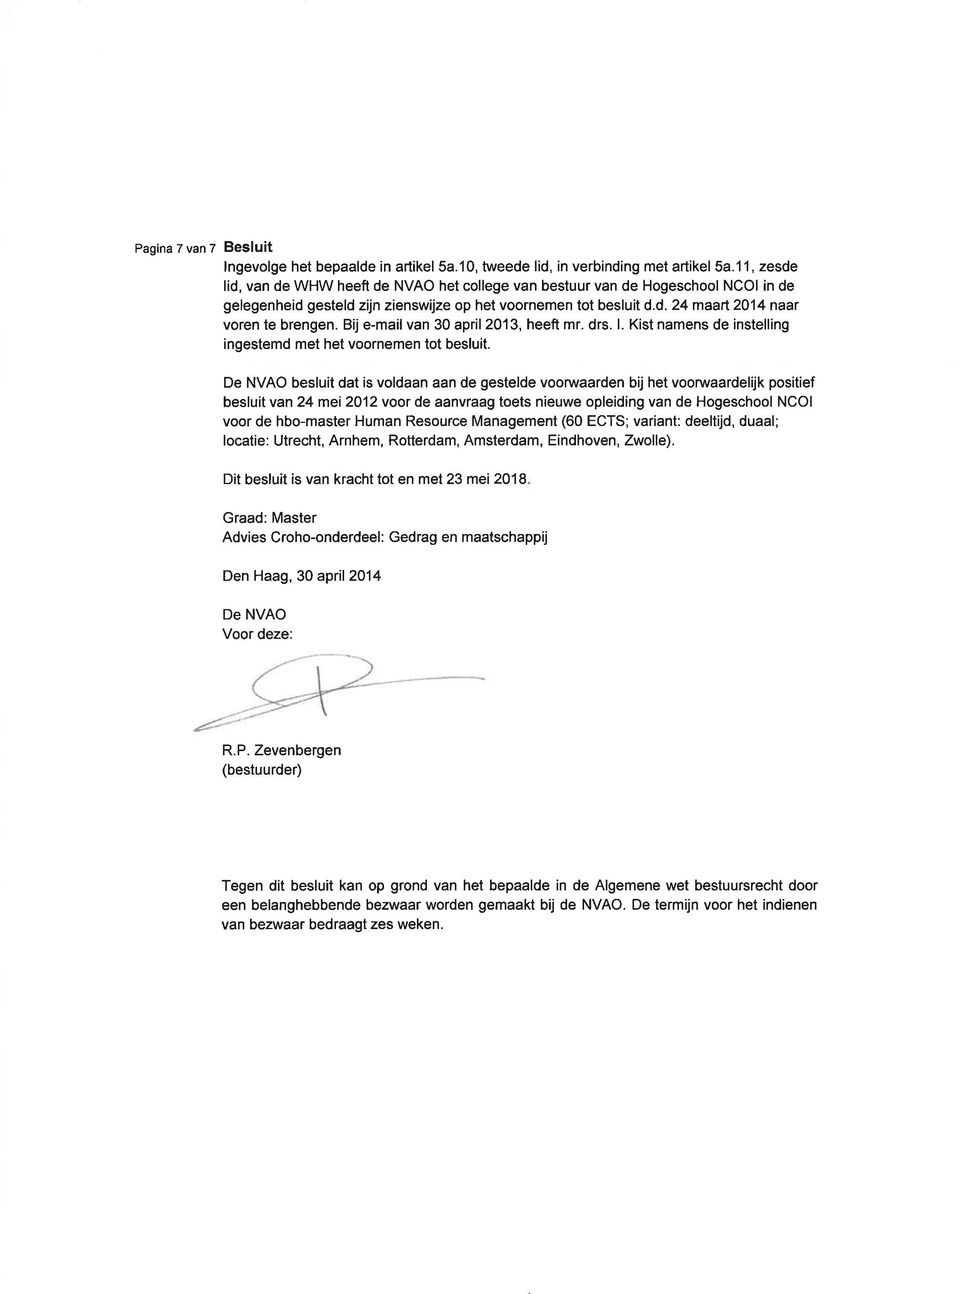 Bij e-mail van 30 april 2013, heeft mr. drs. l. Kist namens de instelling ingestemd met het voornemen tot besluit.